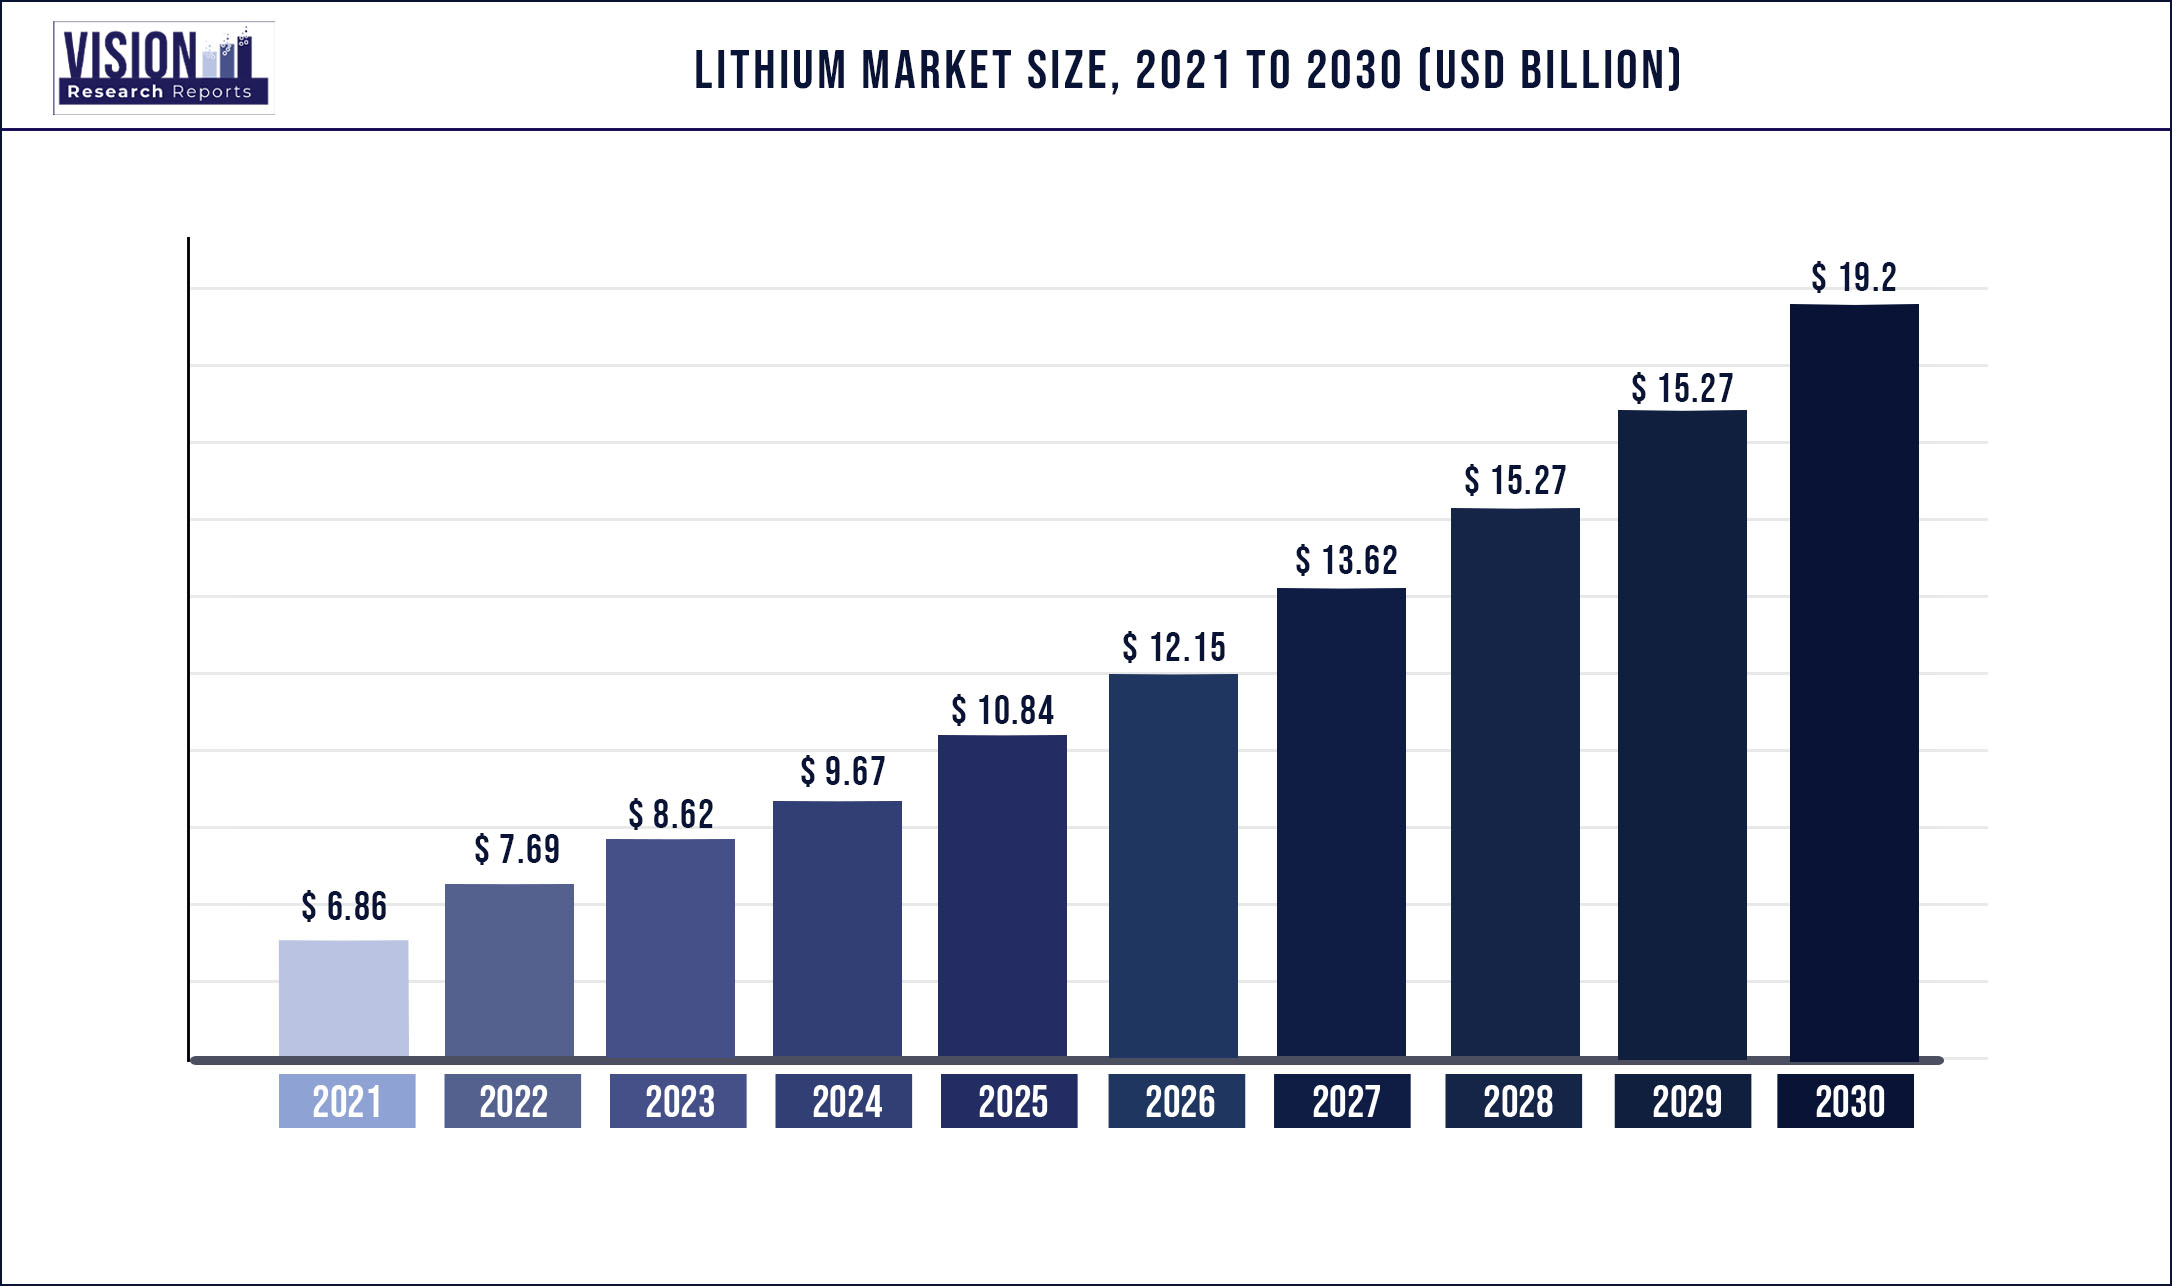 Lithium Market Size 2021 to 2030